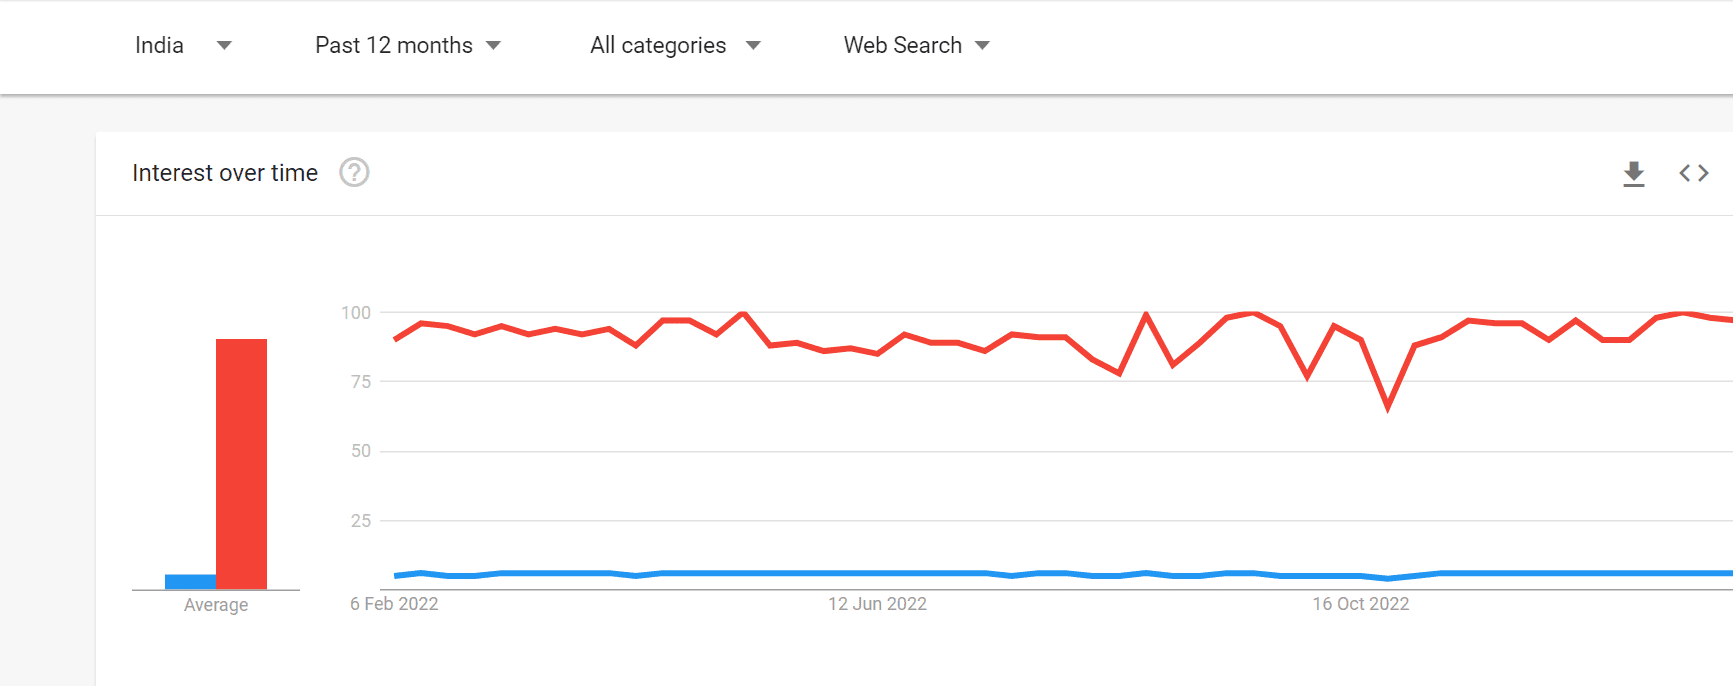 Google Trends Compare